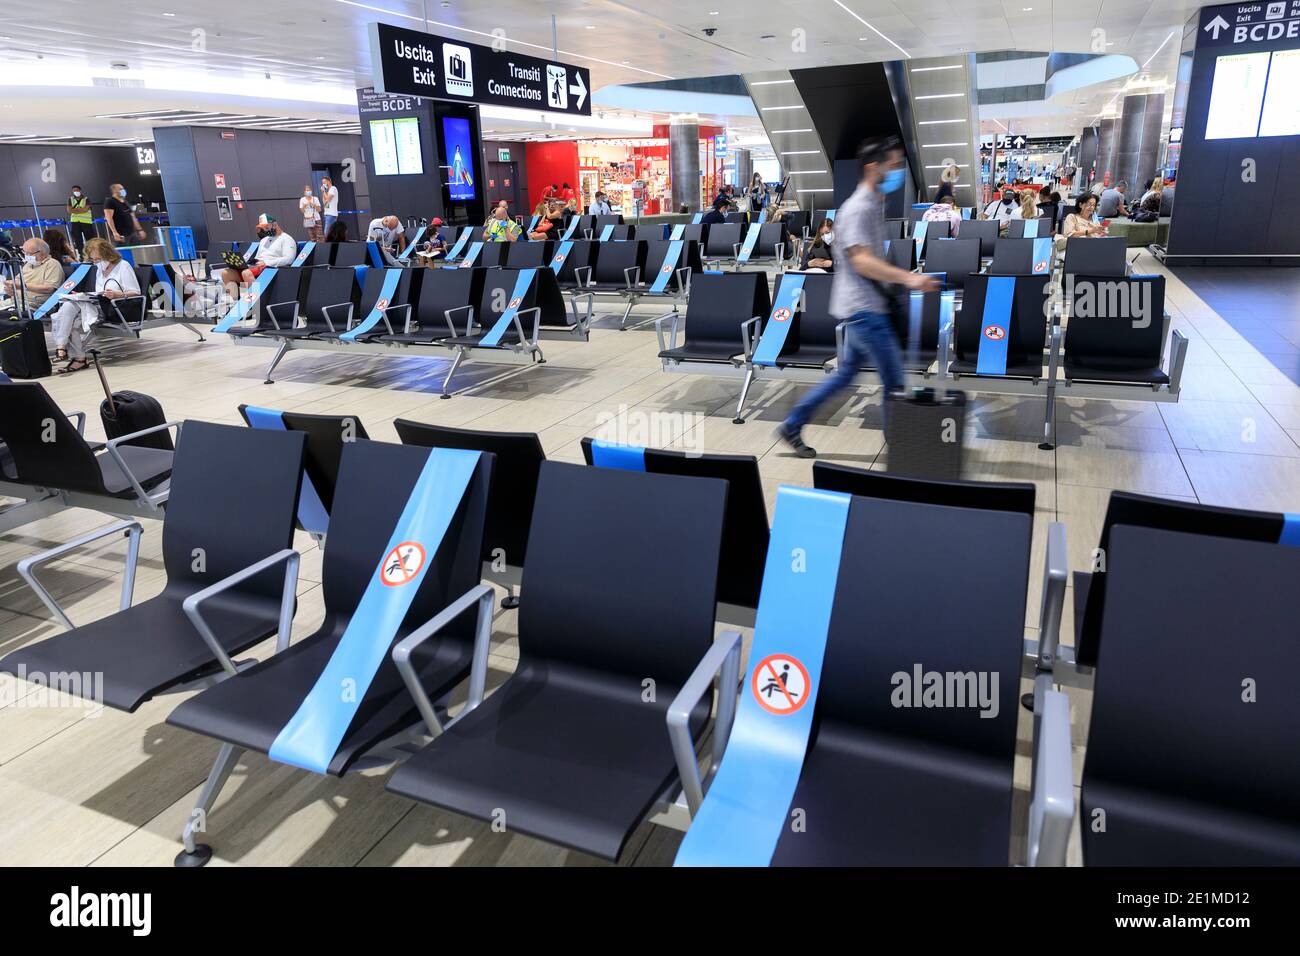 Aeroporto Leonardo da Vinci di Fiumicino: Passeggeri in attesa del volo nel terminal. Alcuni dei sedili sono bloccati a causa della i Foto Stock